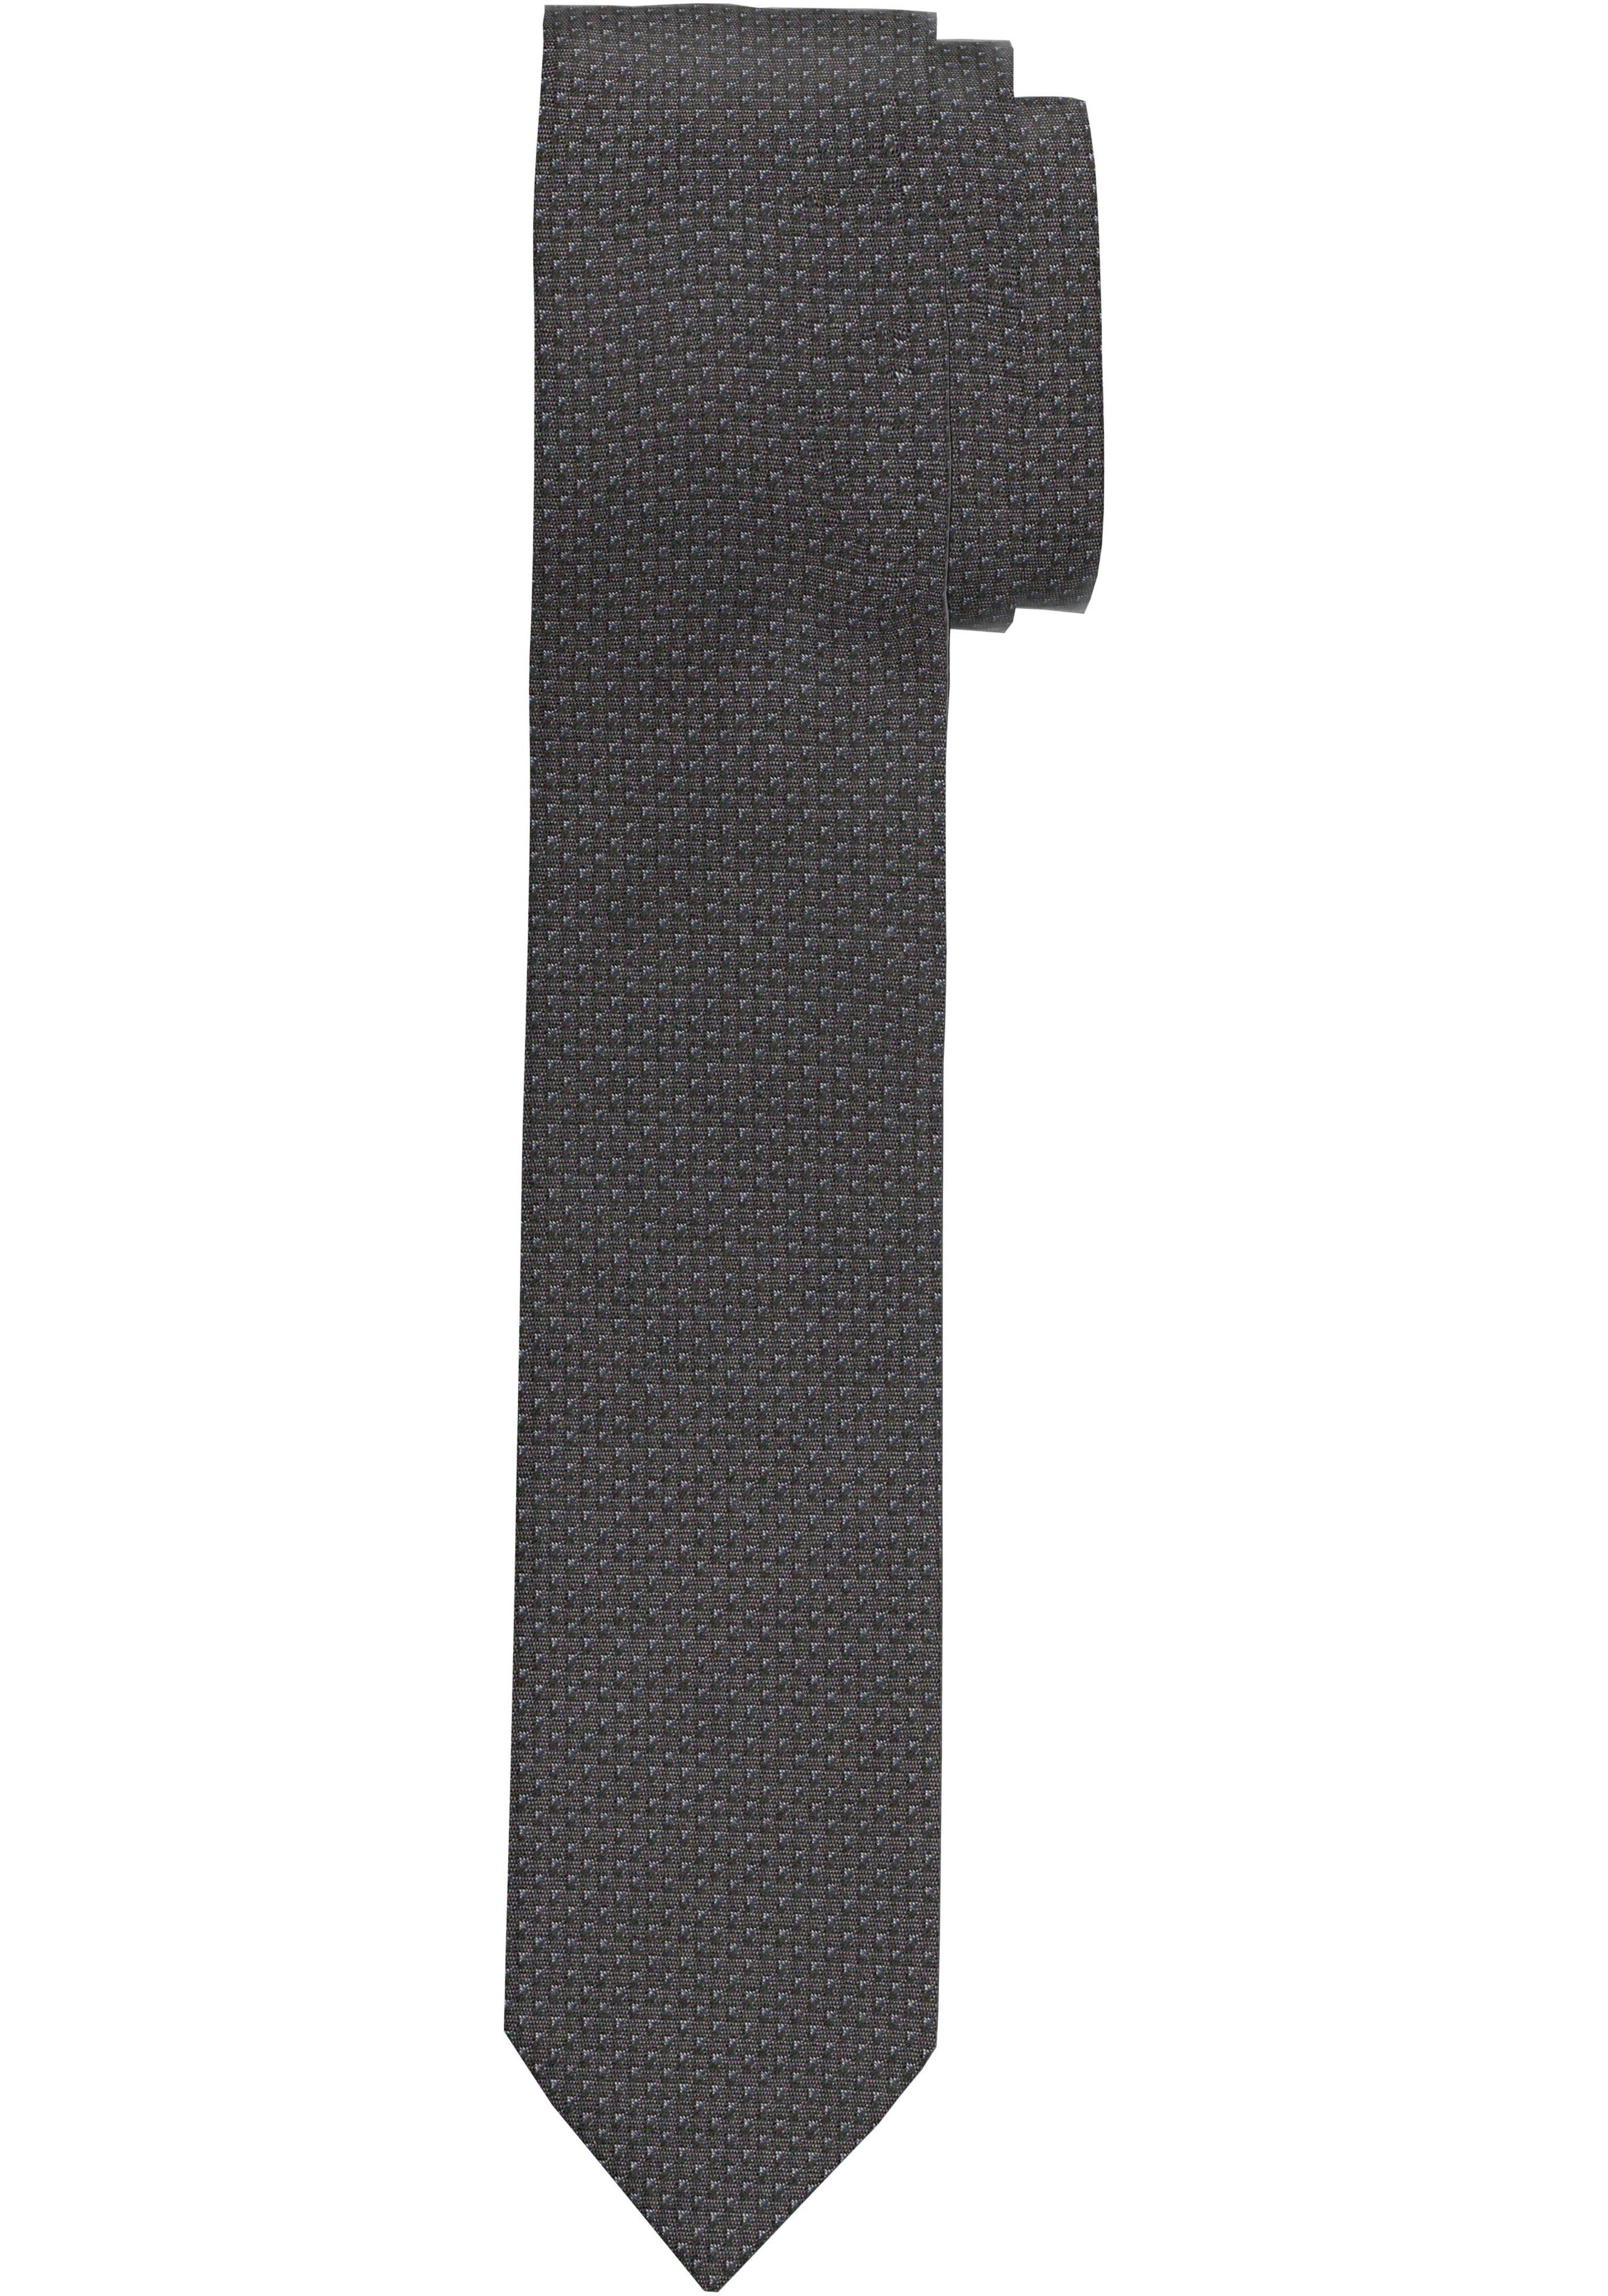 jedem Krawatte zu OLYMP Kombinationen Krawatte, vielfältige Anlass für Perfekt Strukturierte